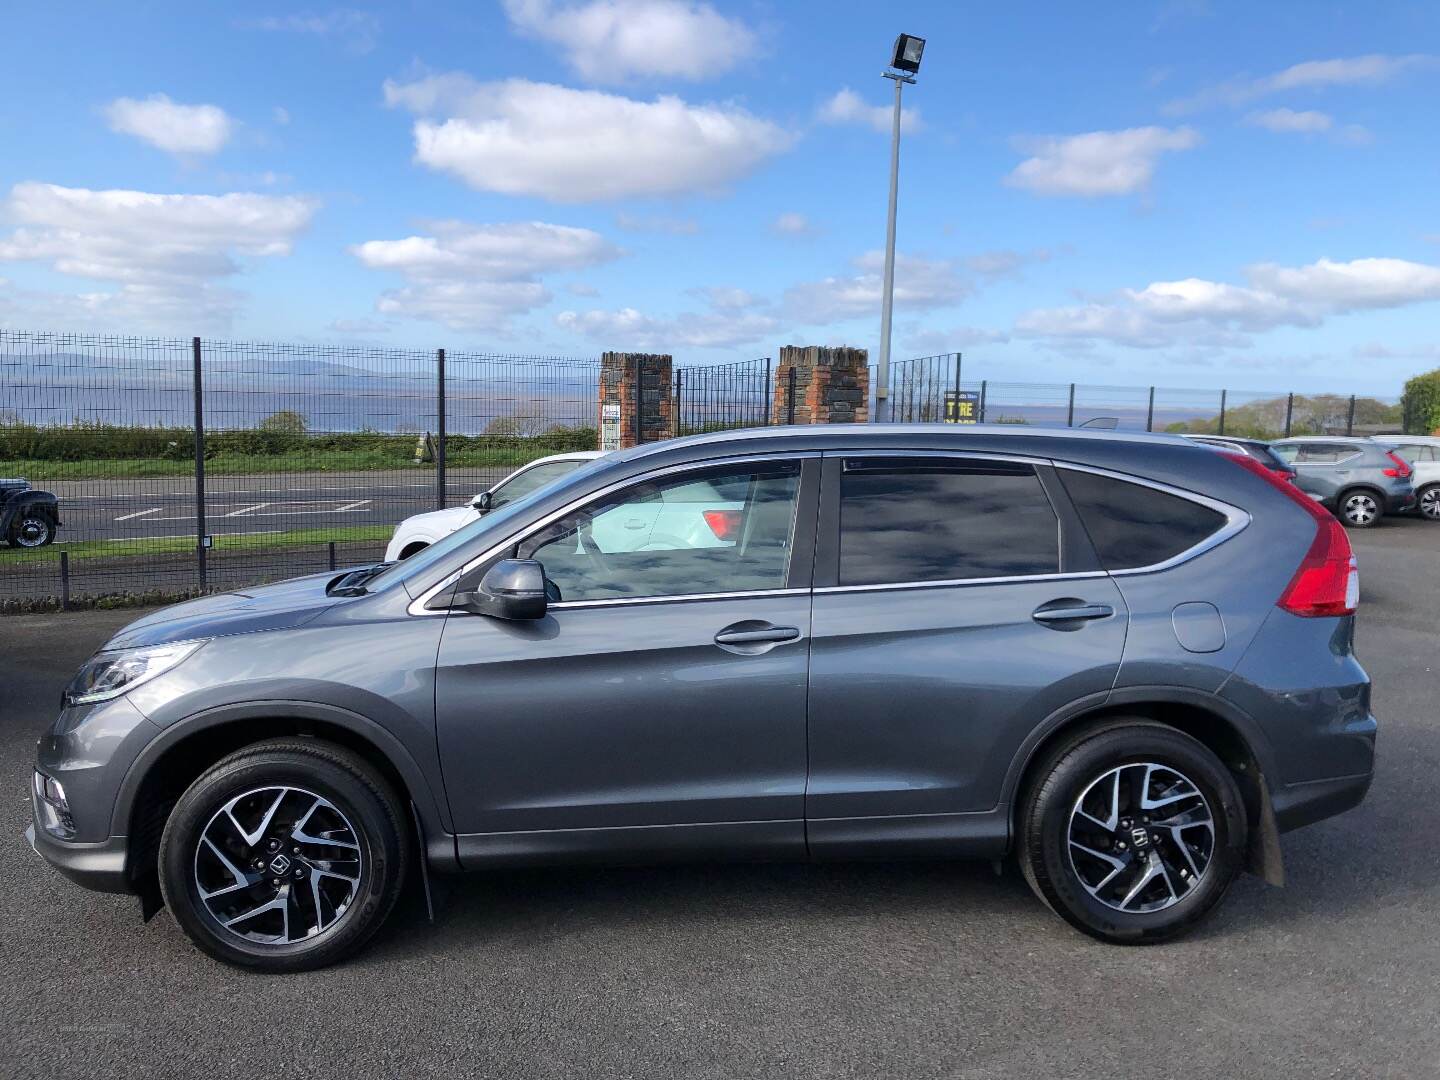 Honda CR-V DIESEL ESTATE in Derry / Londonderry